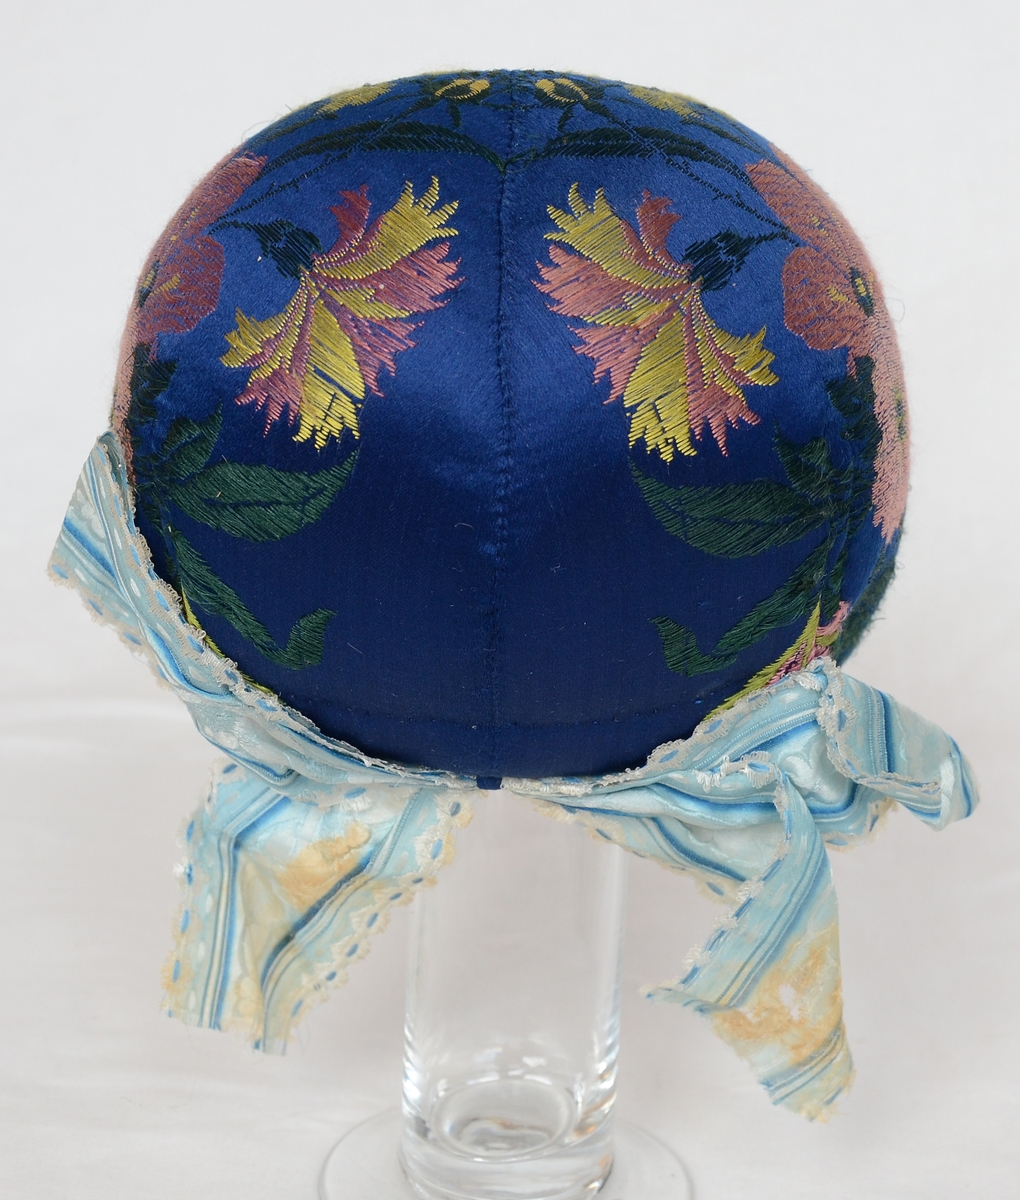 Huvudbonad för kvinna, bindmössa, blå med invävda blom- och blad- mönster i gult och rött.